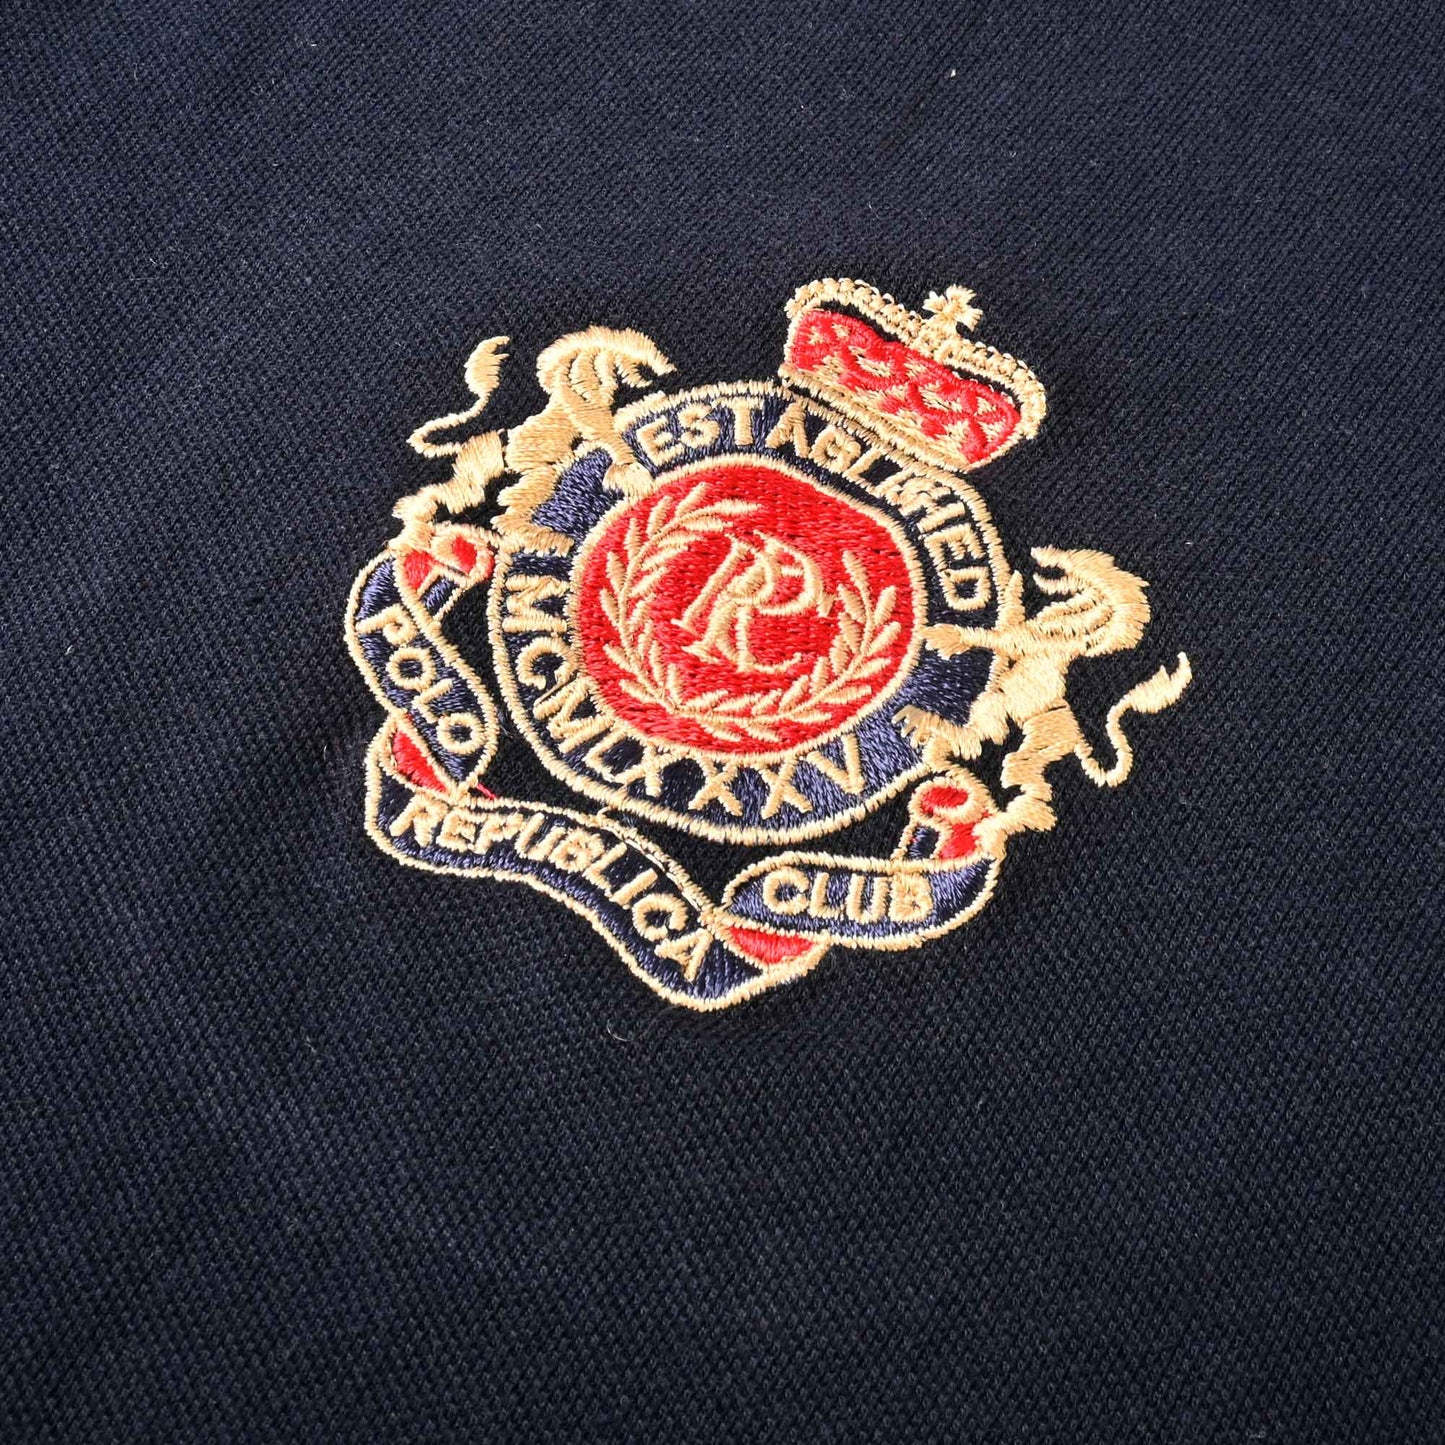 Polo Republica Men's PRC Crest & Polo Embroidered Pocket Polo Shirt Men's Polo Shirt Polo Republica 